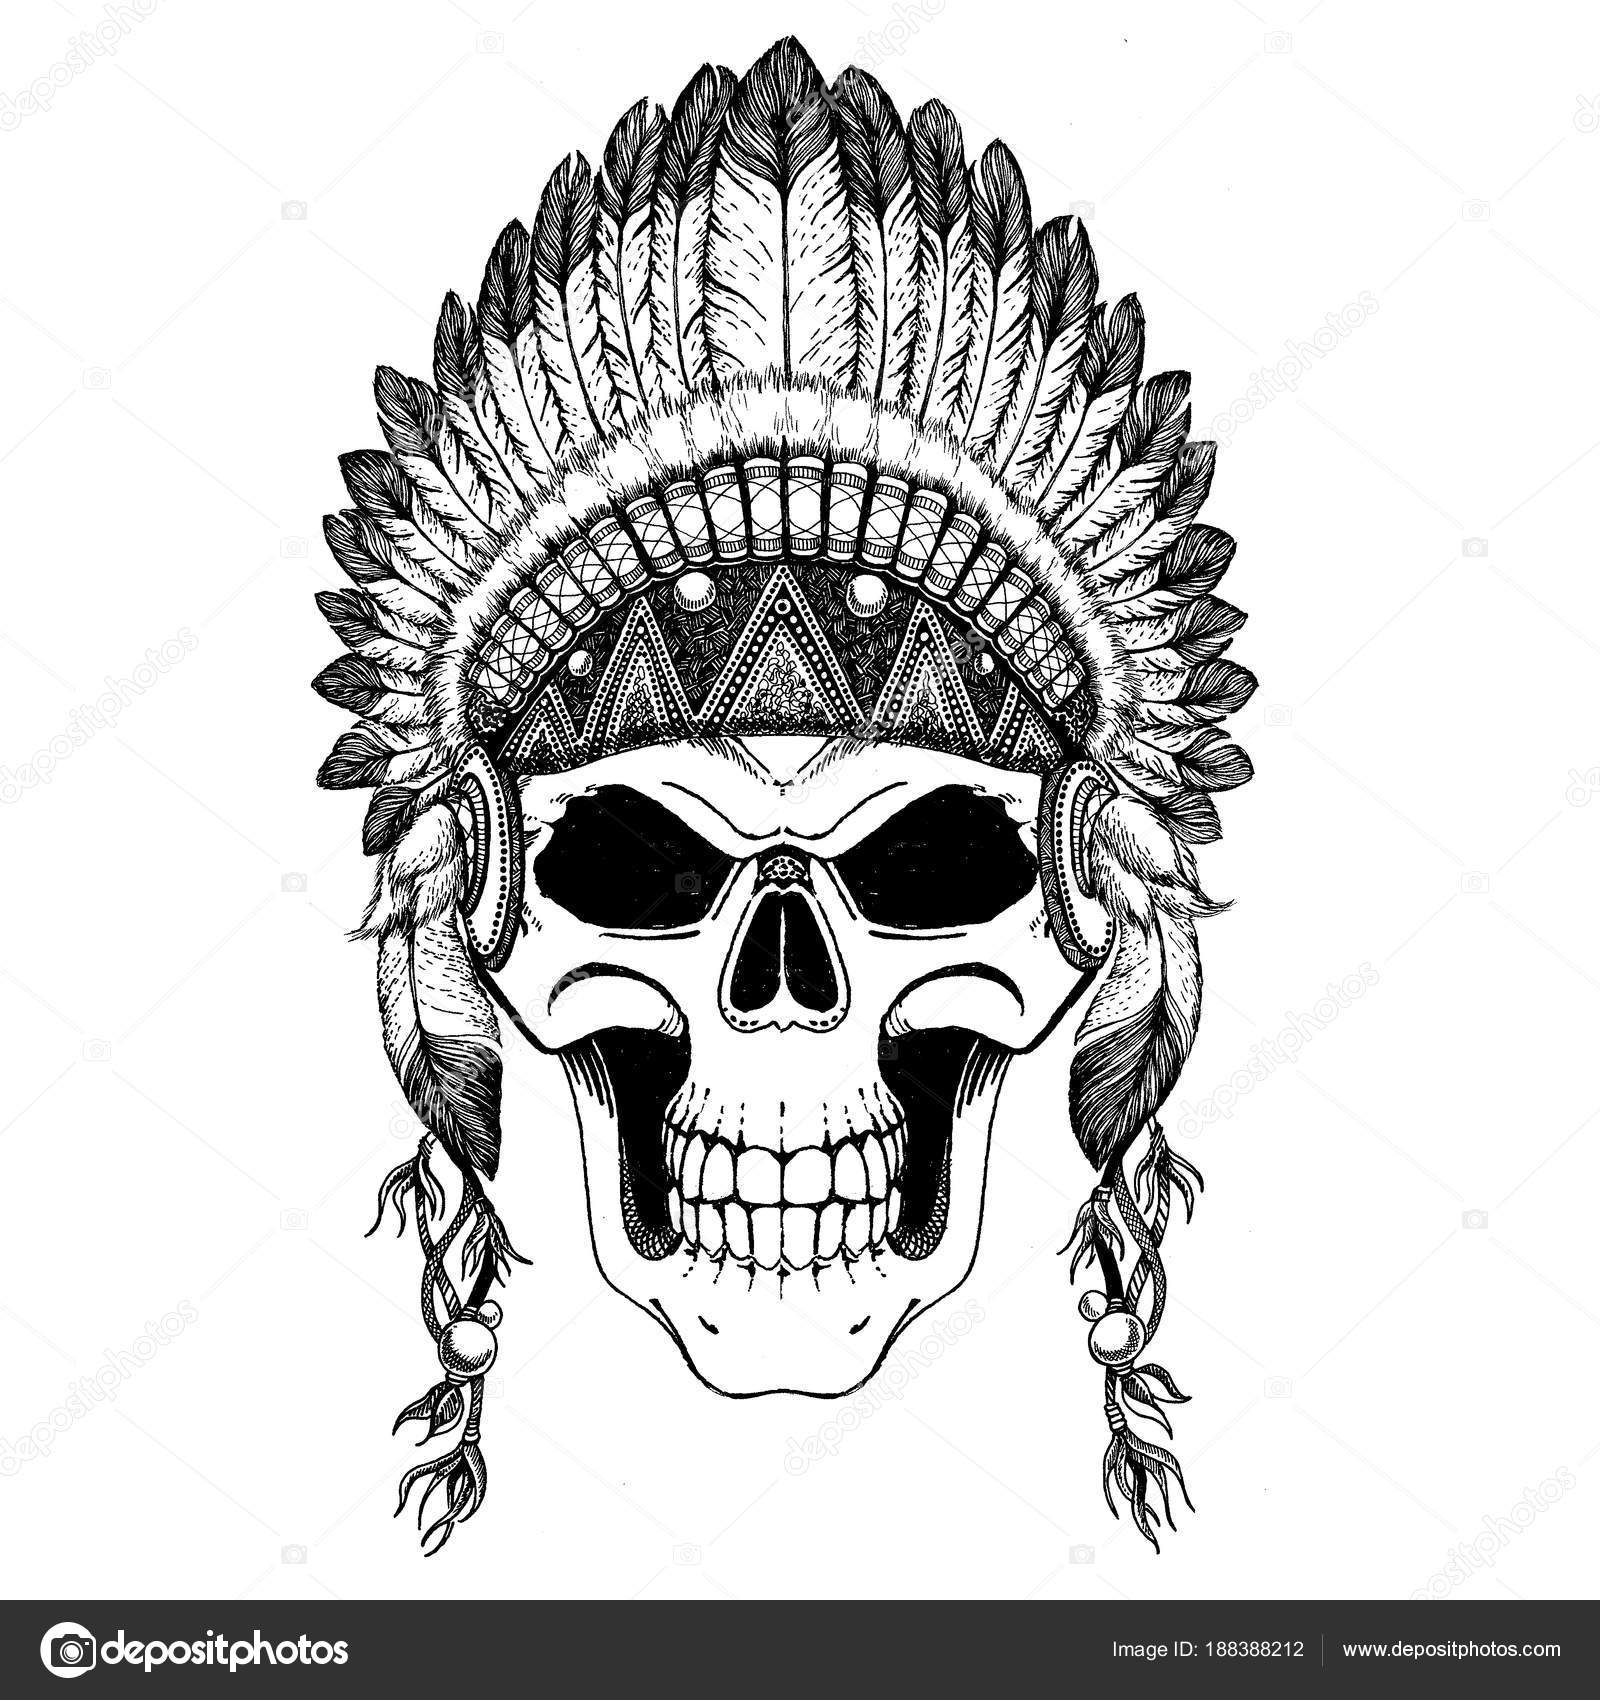 Impresionante corona de plumas en un cráneo, repitiendo el indio